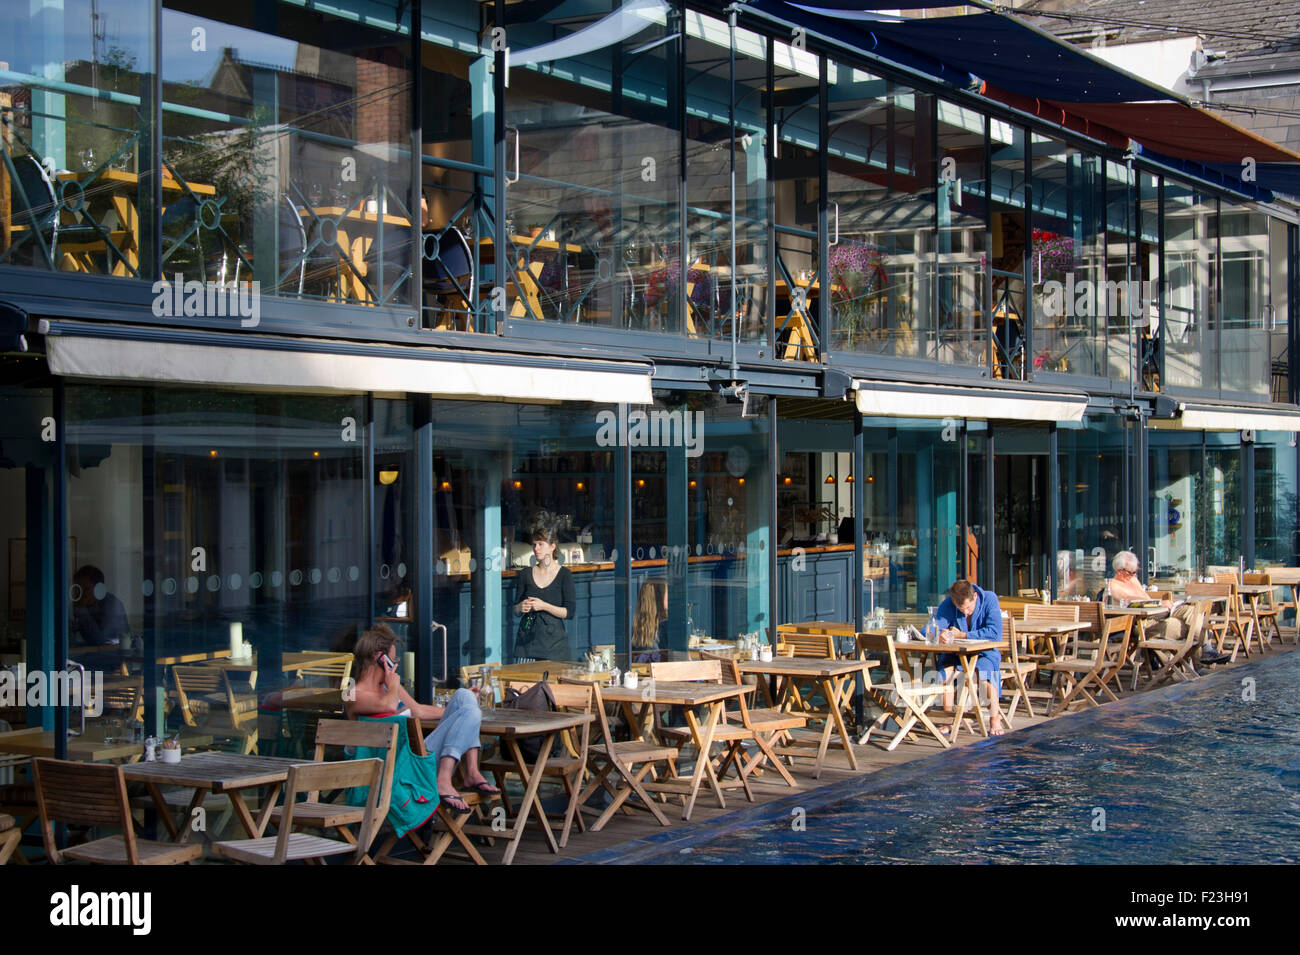 Il lido spa & ristorante, Clifton, Bristol, che include un vittoriana di piscina all'aperto, bar e ristorante. Foto Stock